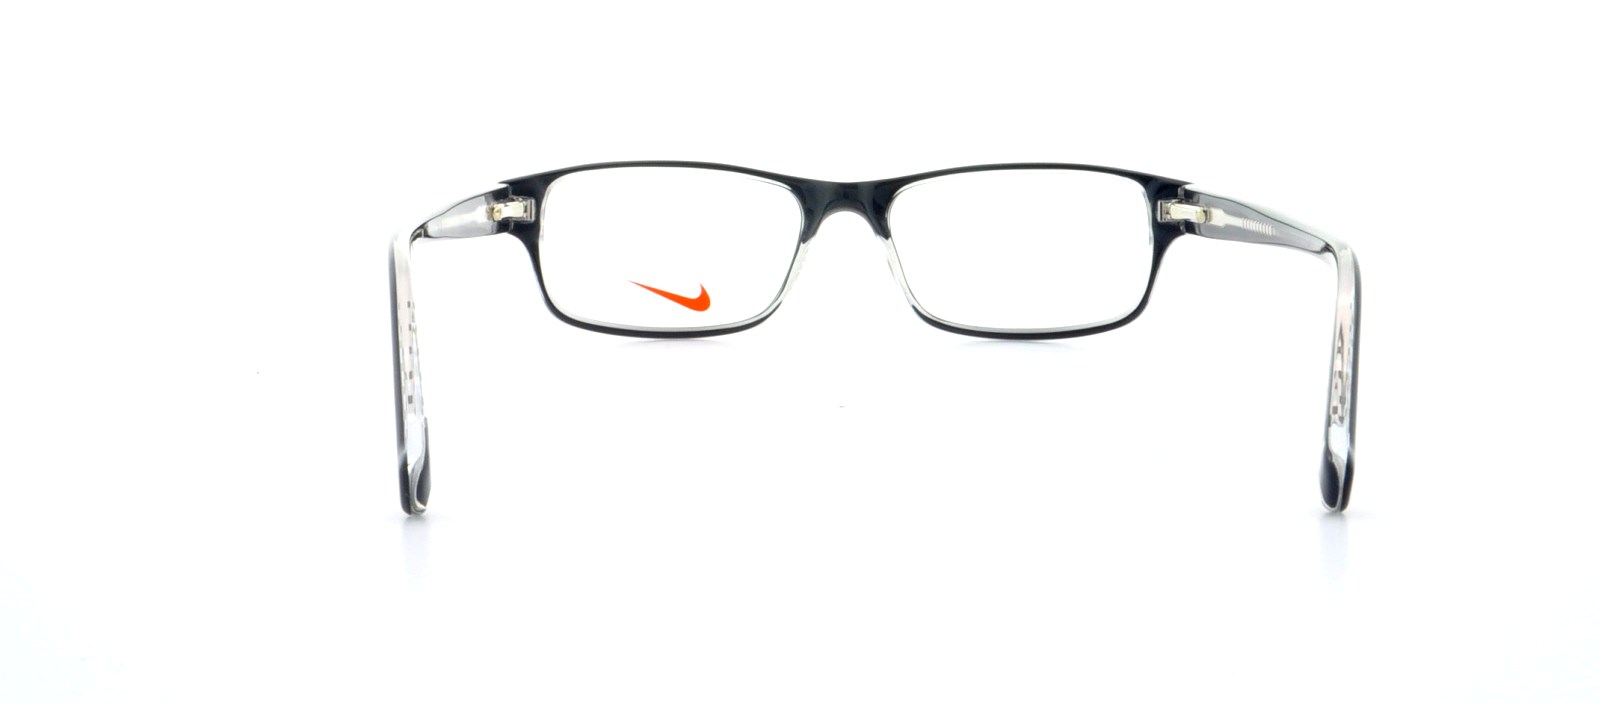 medios de comunicación pánico Inconsciente Designer Frames Outlet. Nike Eyeglasses 5507